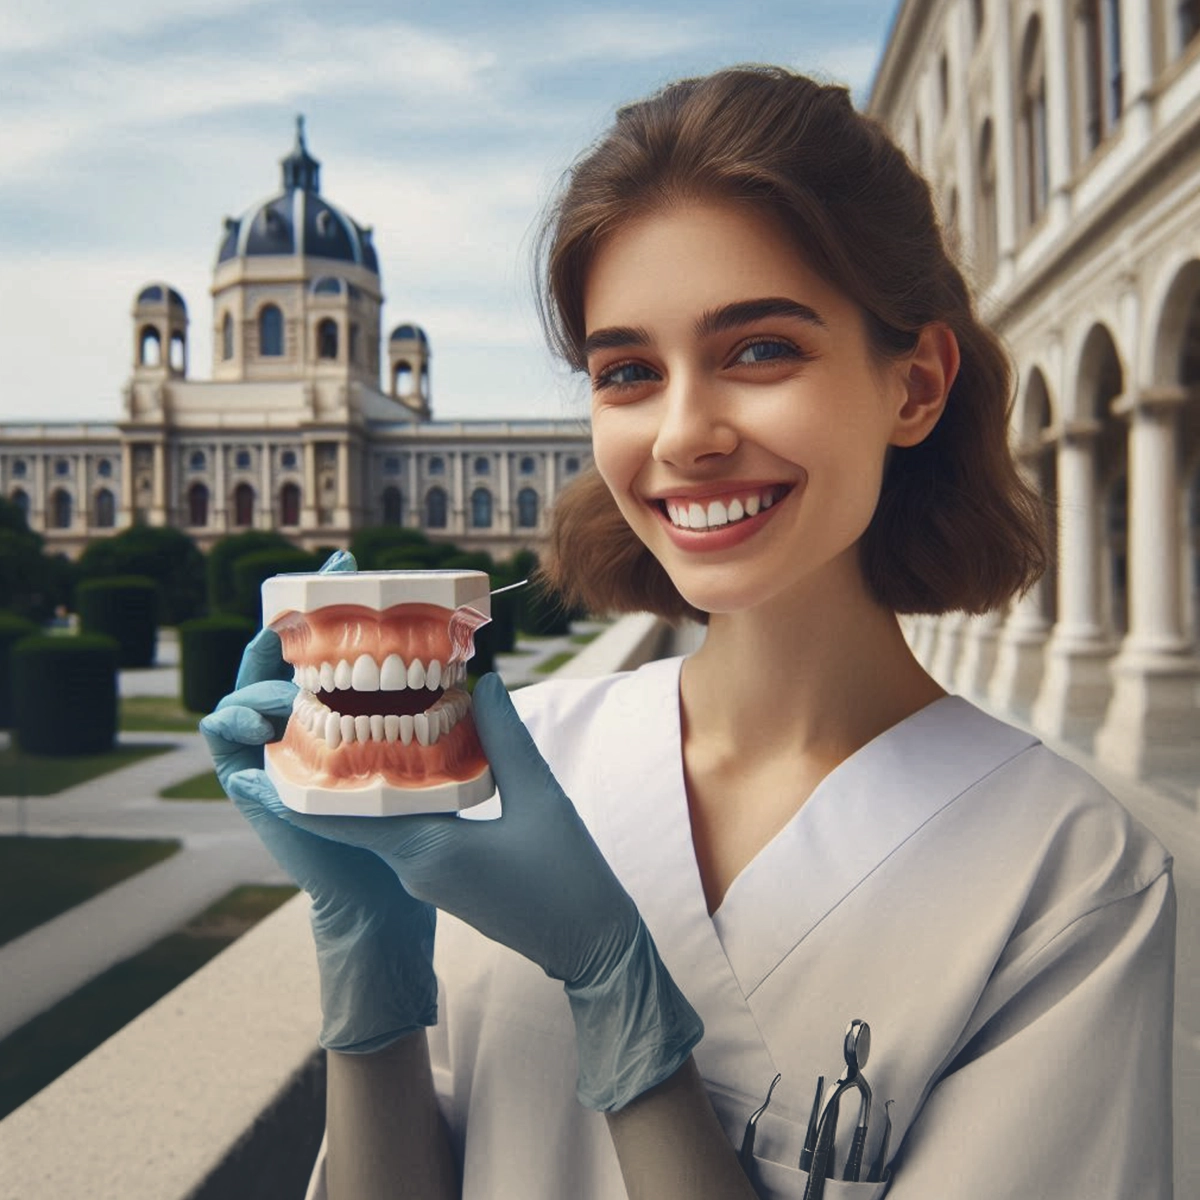 تحصیل دندانپزشکی در اتریش